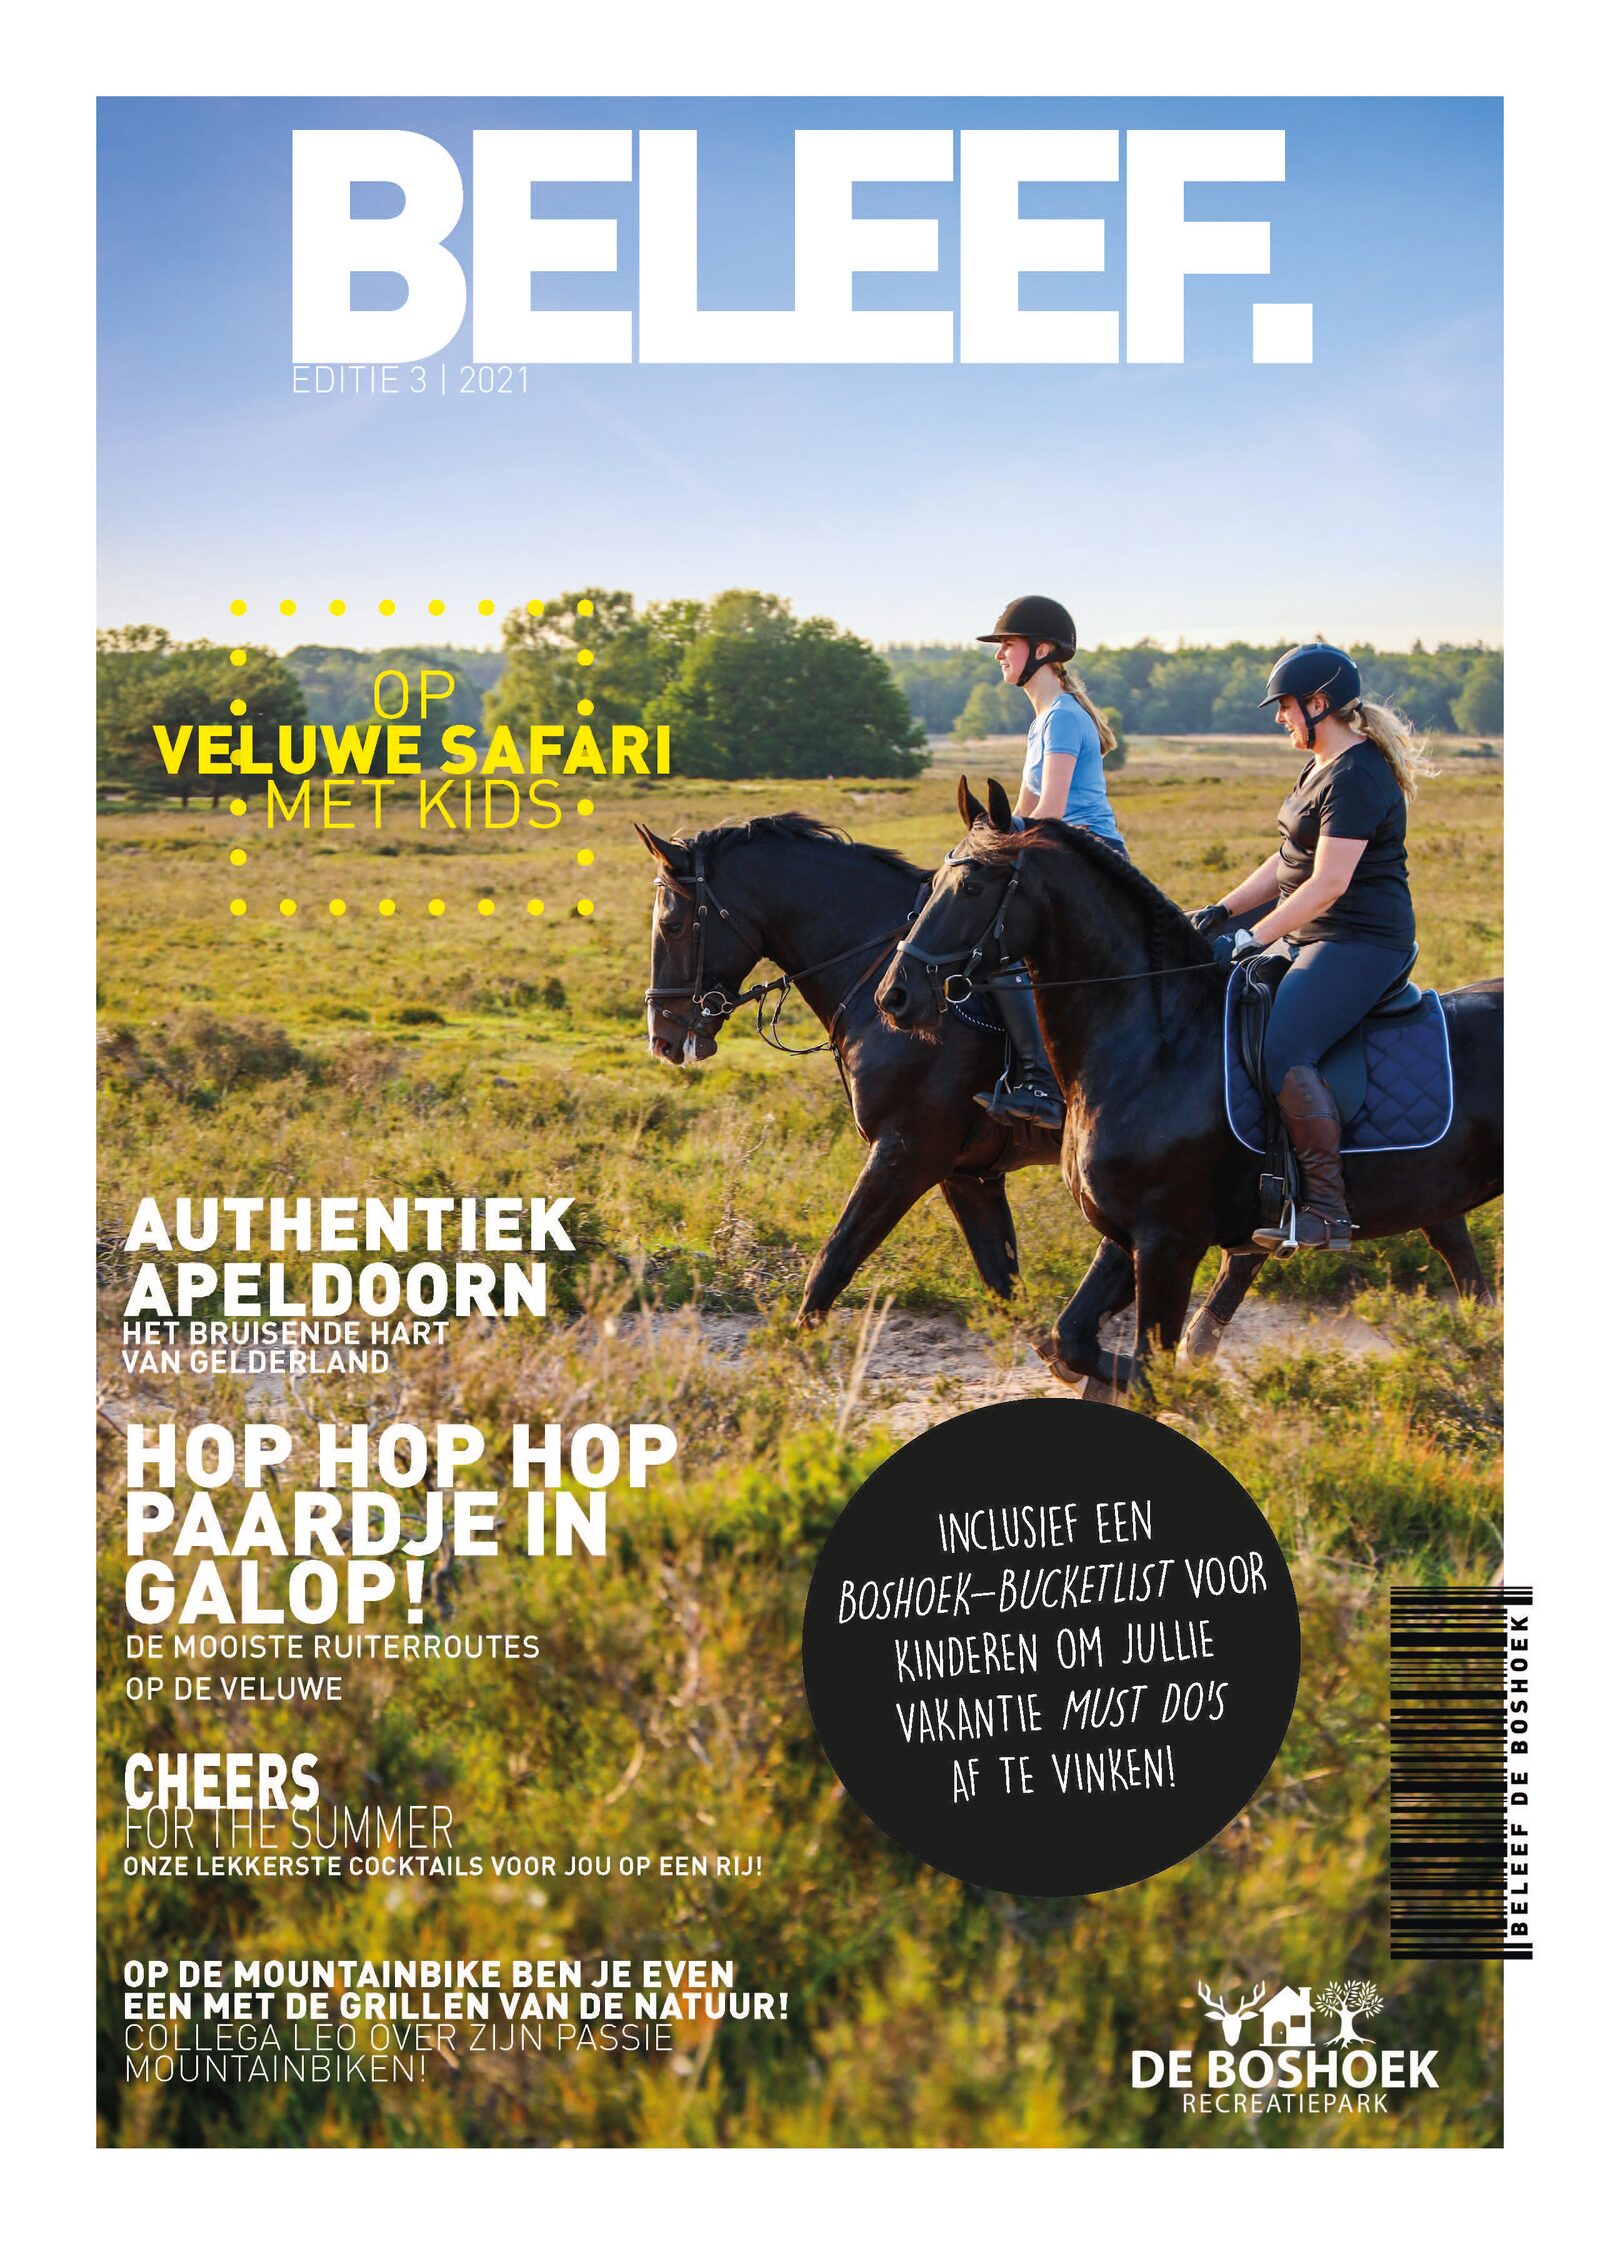 BELEEF Magazine, Recreatiepark De Boshoek, Edition 3